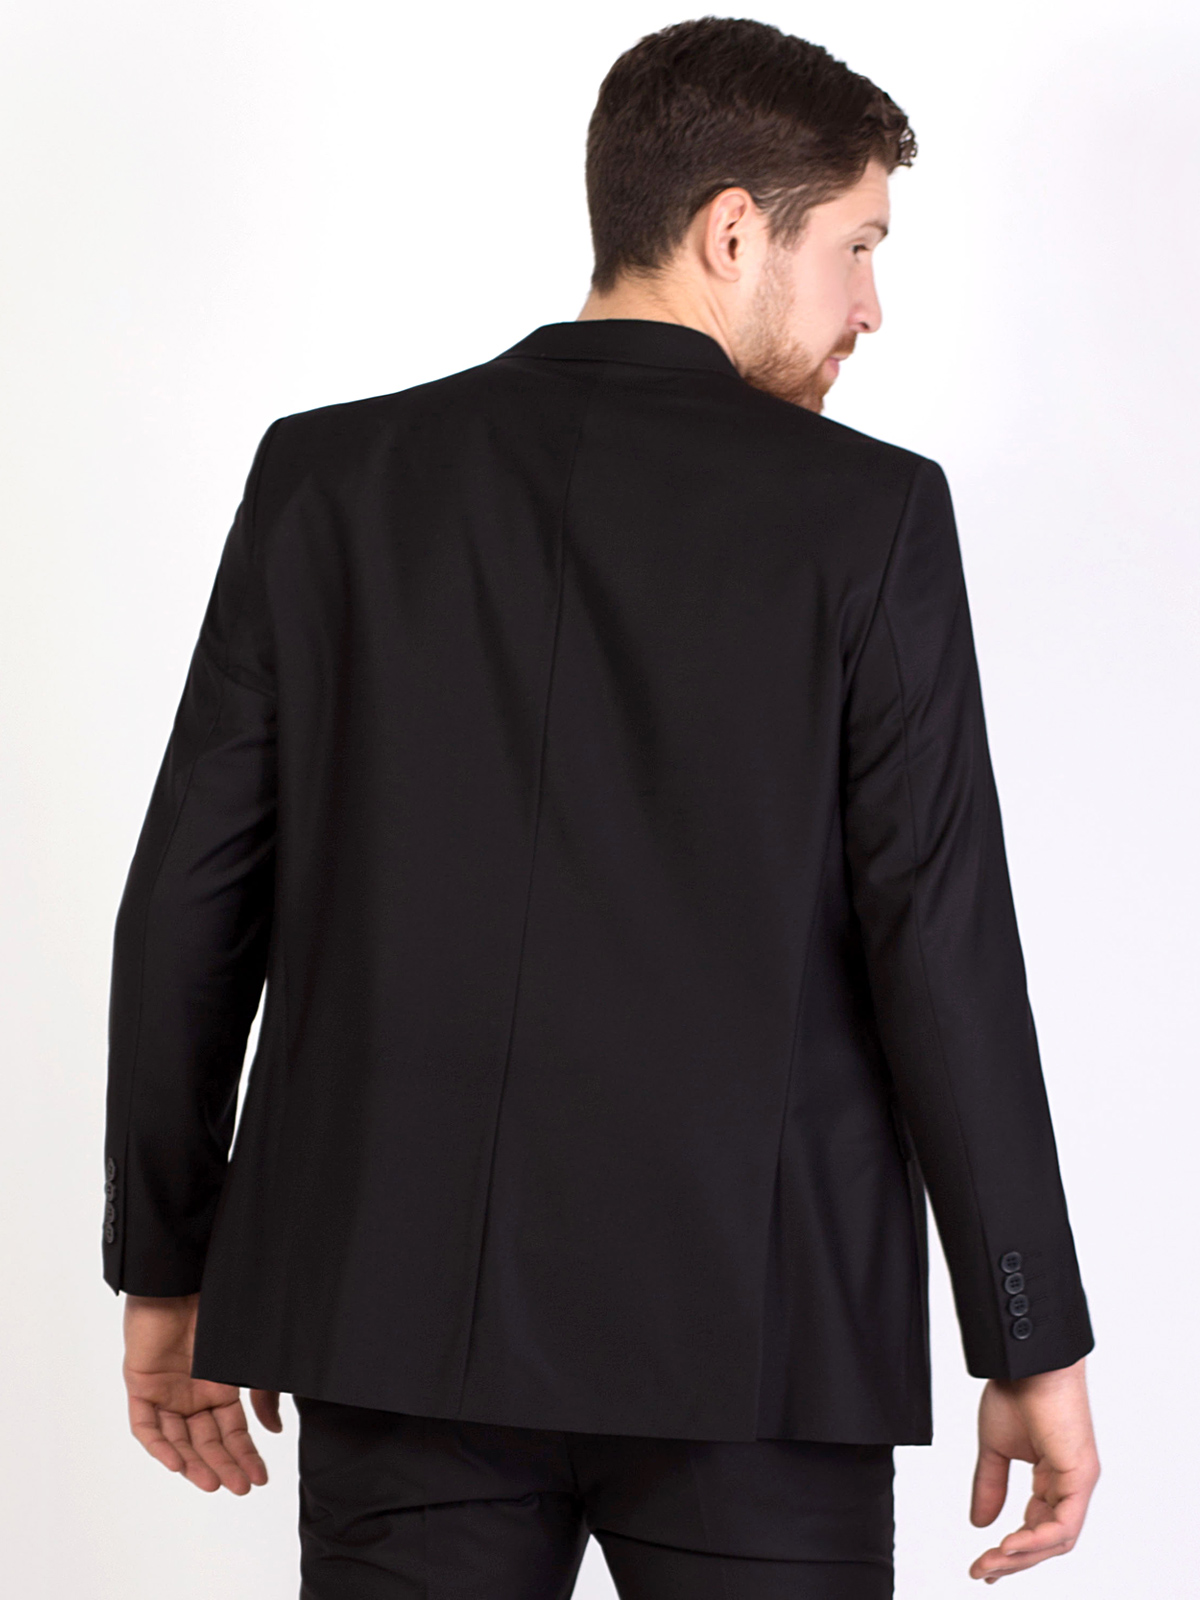  jachetă clasică neagră cu silueta mulat - 64110 € 107.98 img4